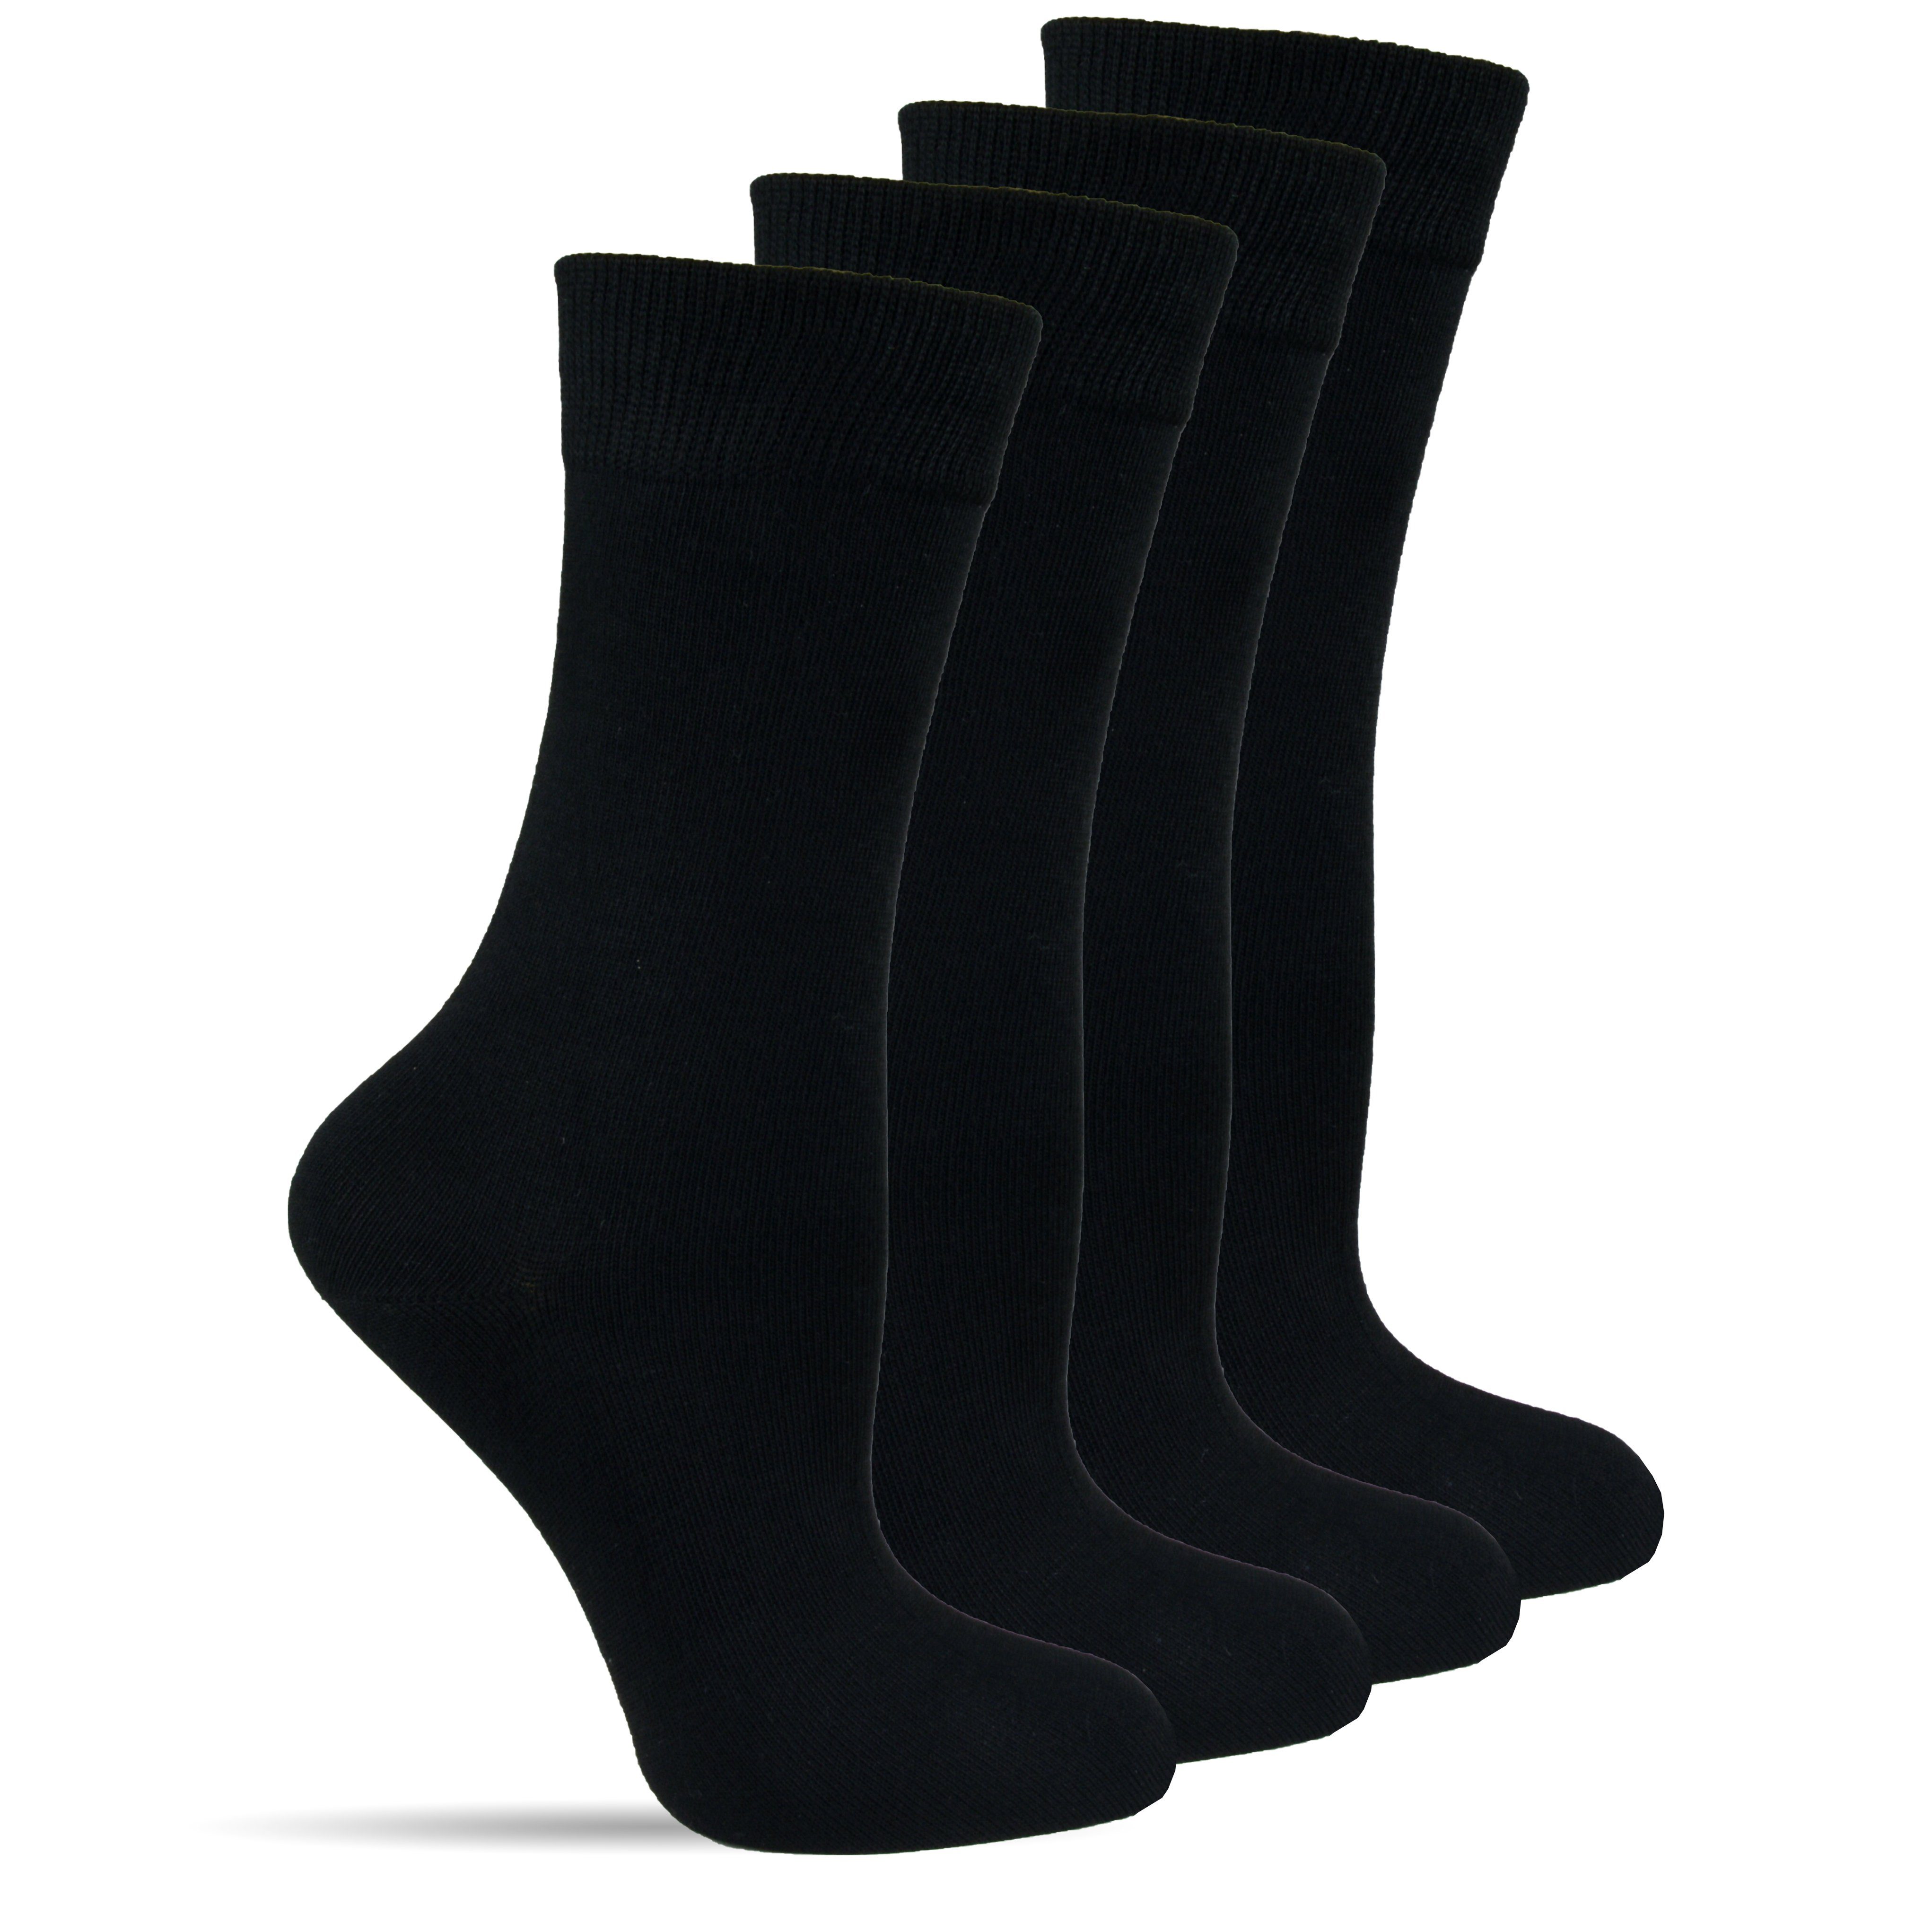 Socked Gesundheitssocken für Damen ohne Gummi (Beutel, 12 Paar) Komfortbund, kein Einschneiden Schwarz